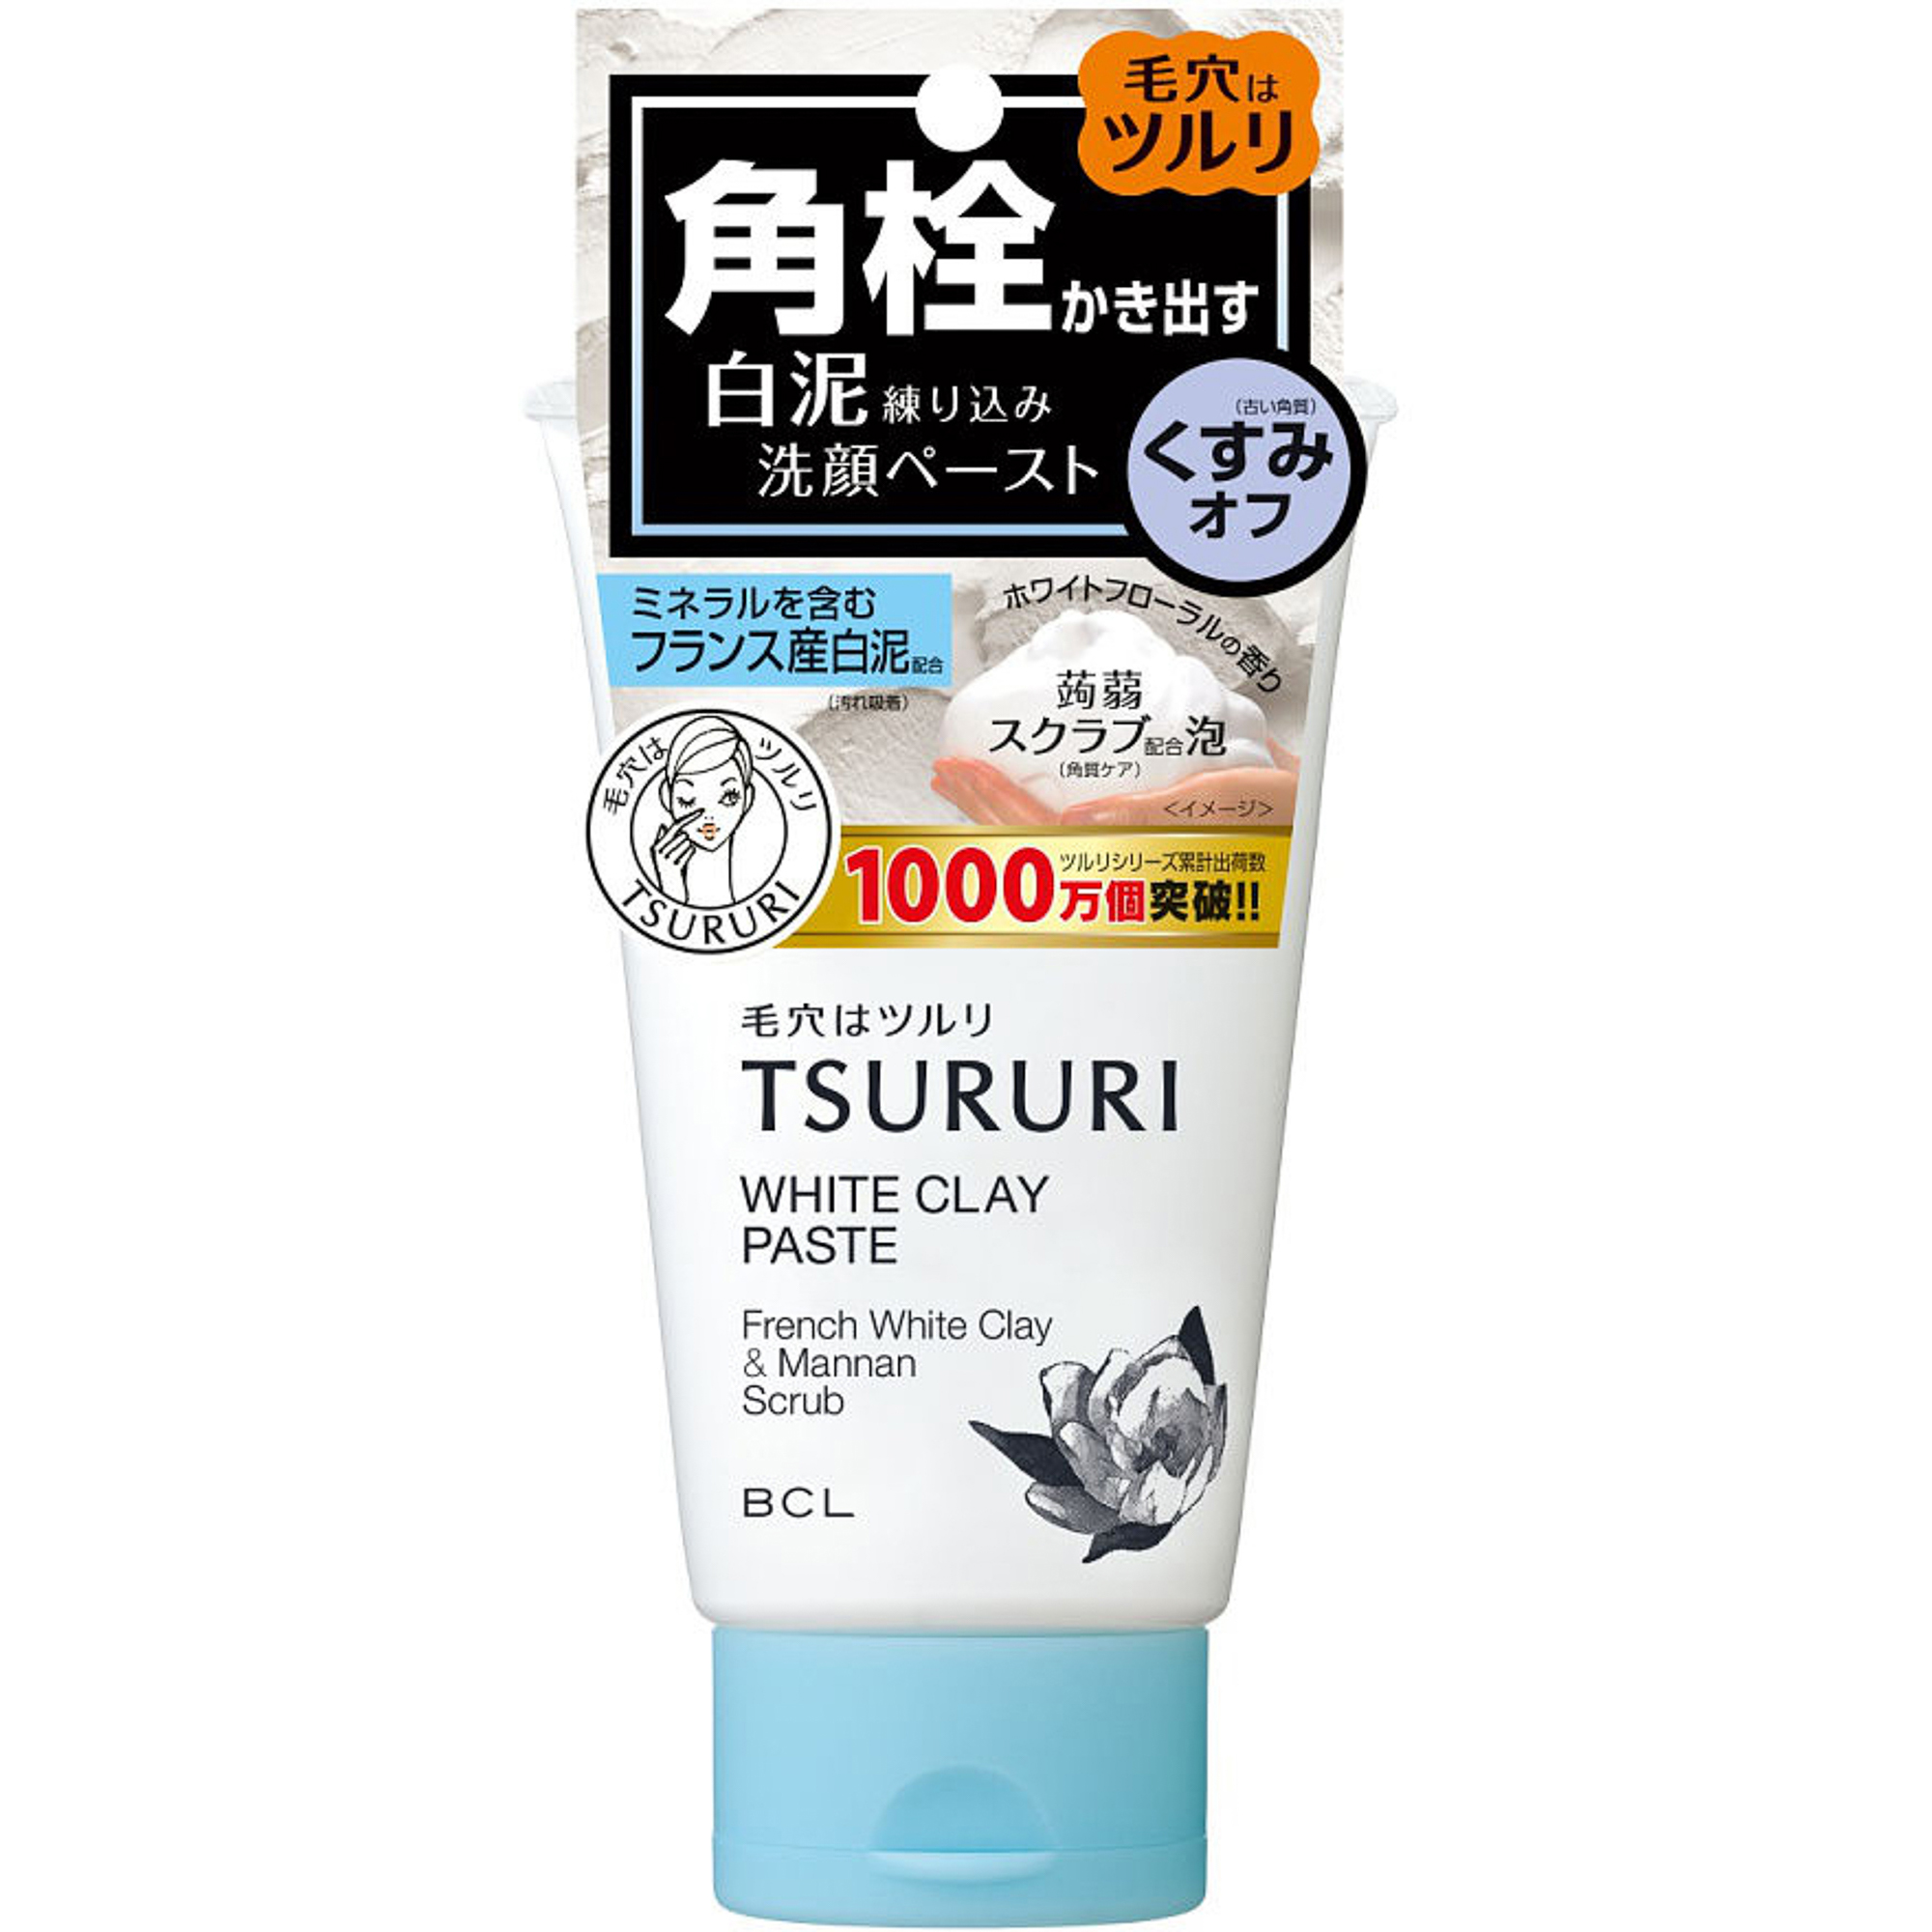 фото Пенка-скраб tsururi для глубокого очищения кожи с французской белой глиной и японским маннаном 120 г